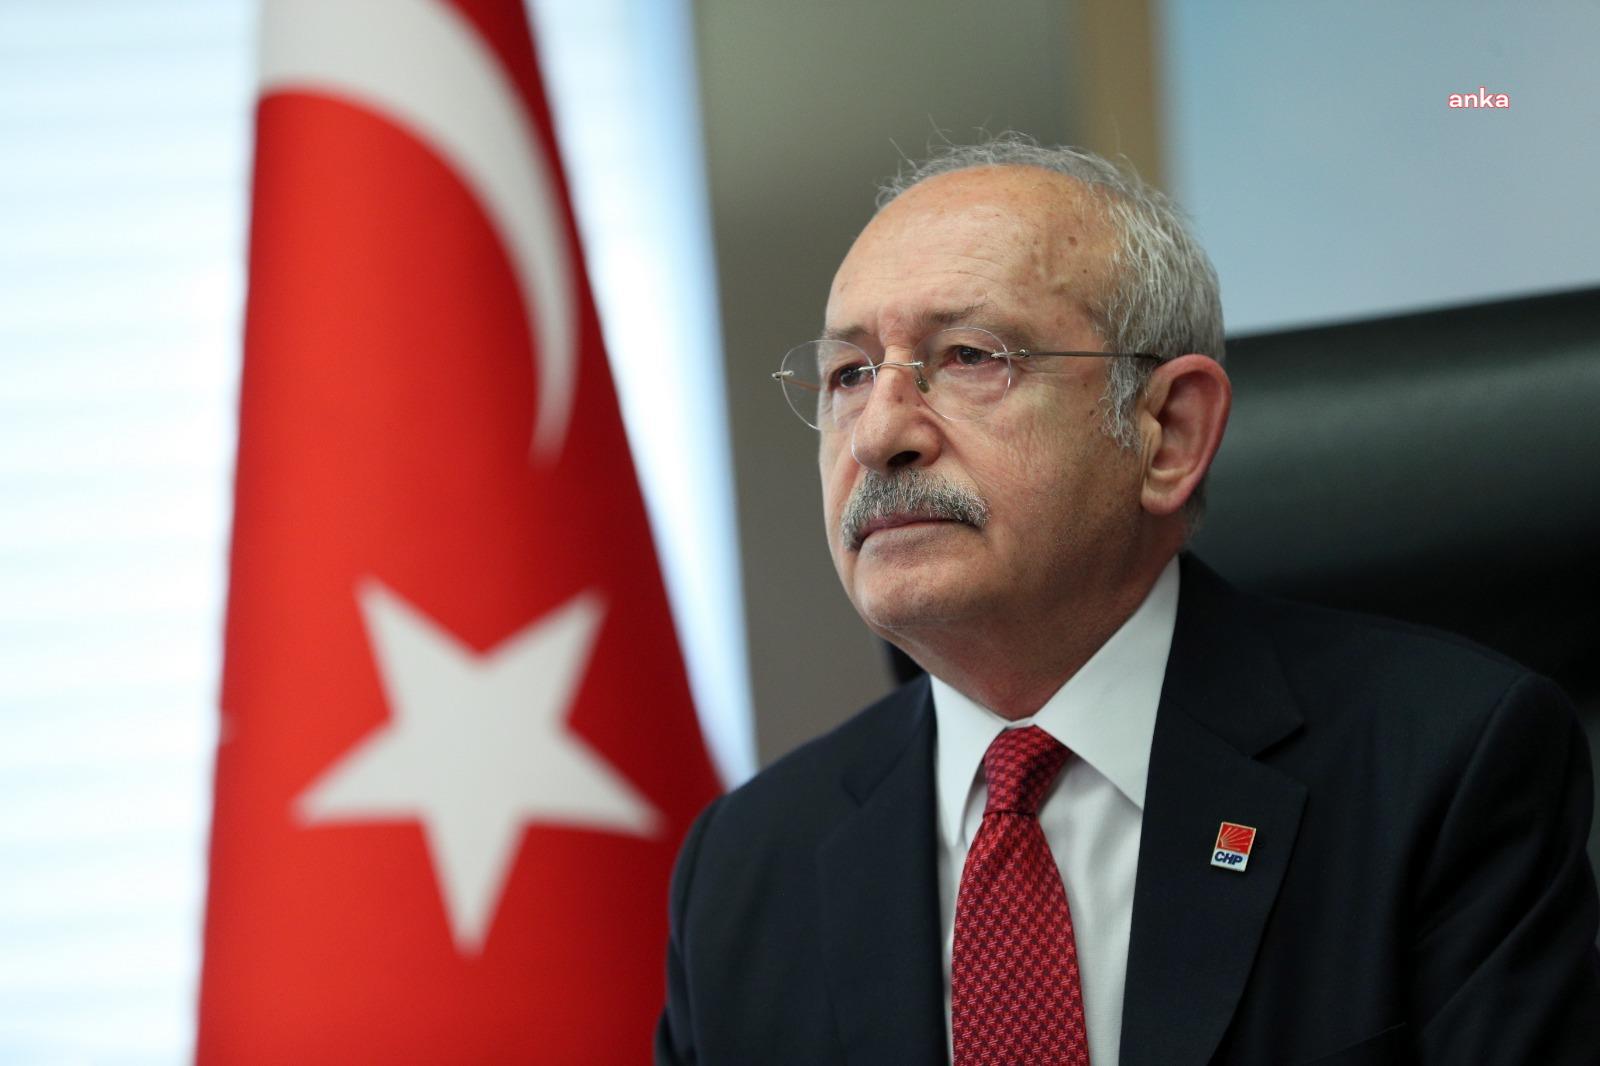 Kılıçdaroğlu: "Gerçekler aydınlansın diye mesleğini icra ederken gözaltında katledilen Metin Göktepe'yi rahmetle anıyorum"